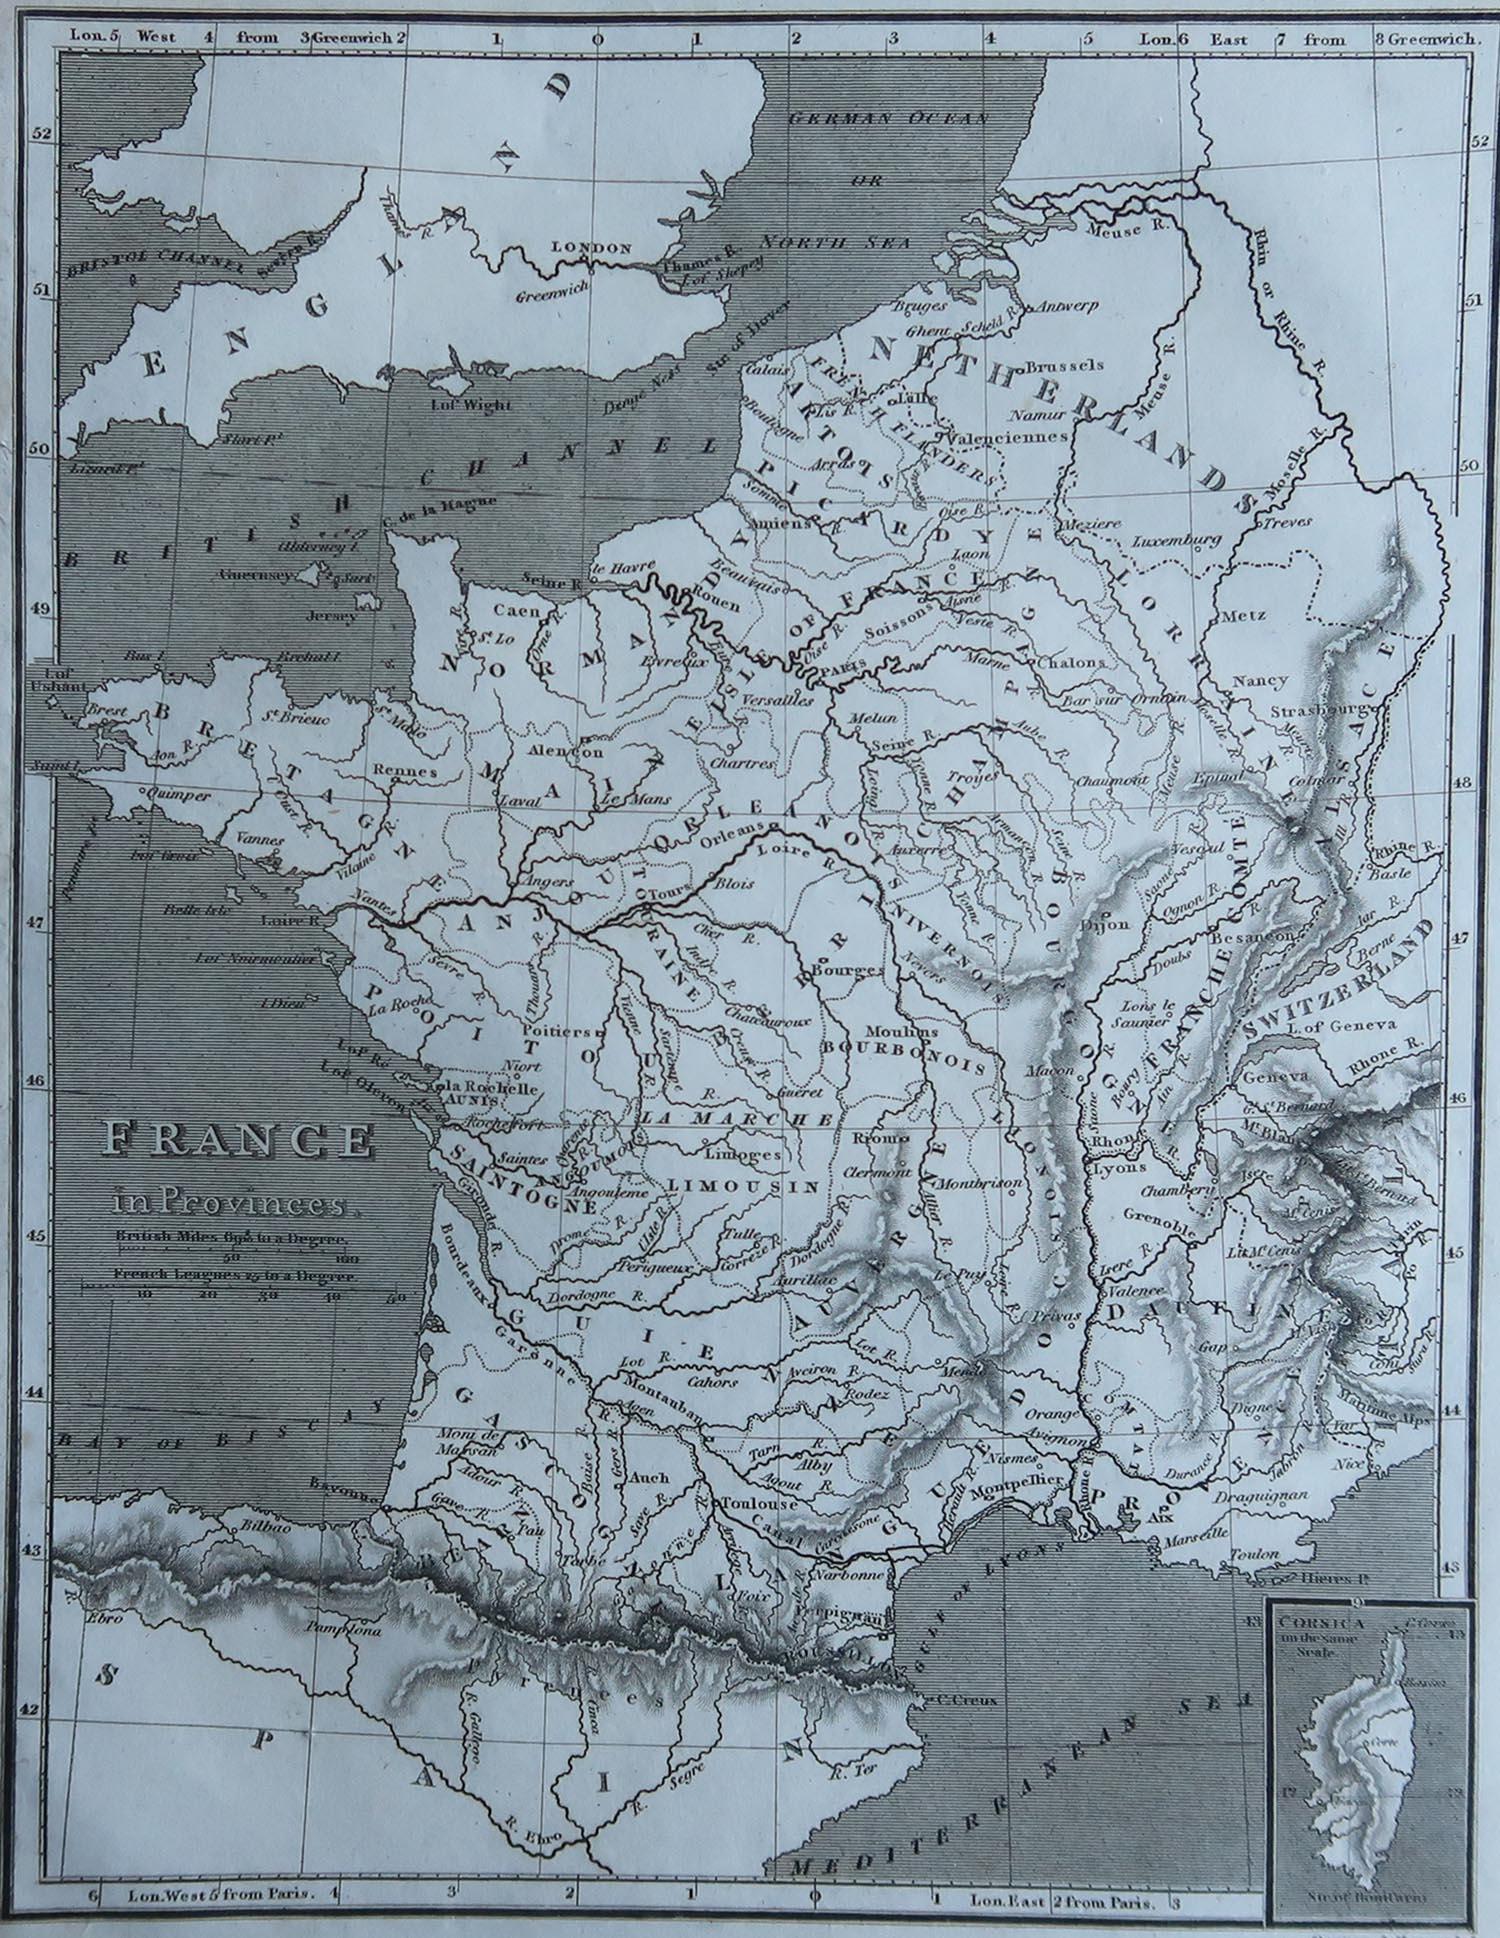 Große Karte von Frankreich

Kupferstich von Cooper

Veröffentlicht von Sherwood, Neely & Jones.

Datiert 1809

Ungerahmt.